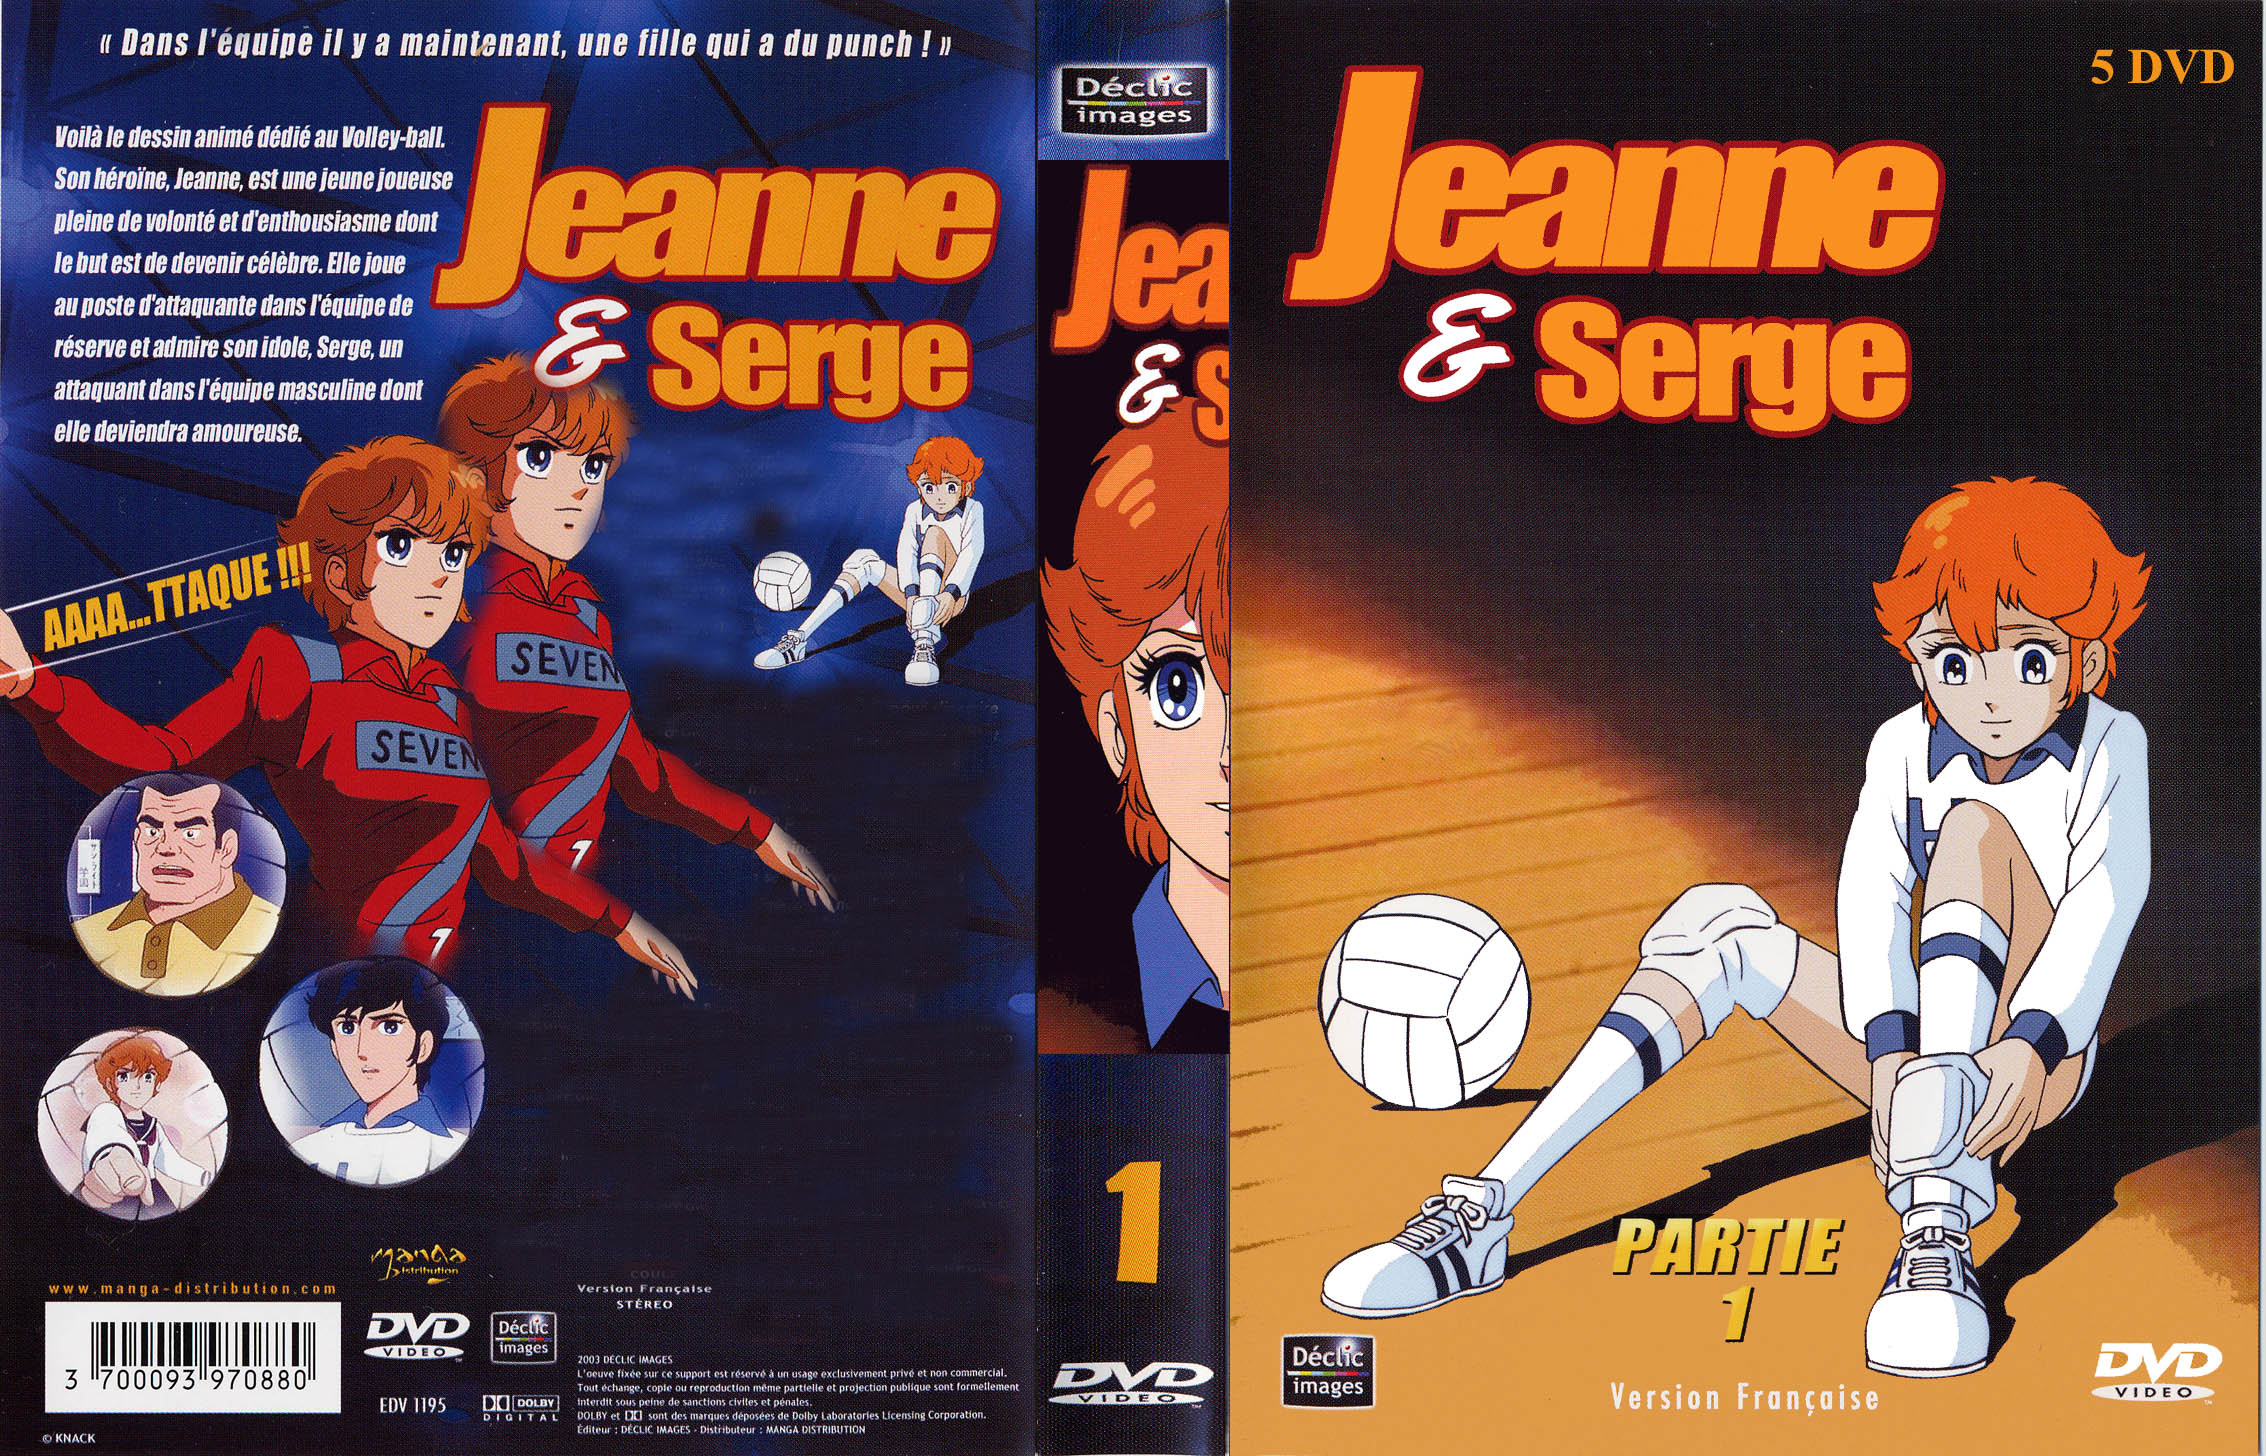 Jaquette DVD Jeanne et Serge coffret vol 1